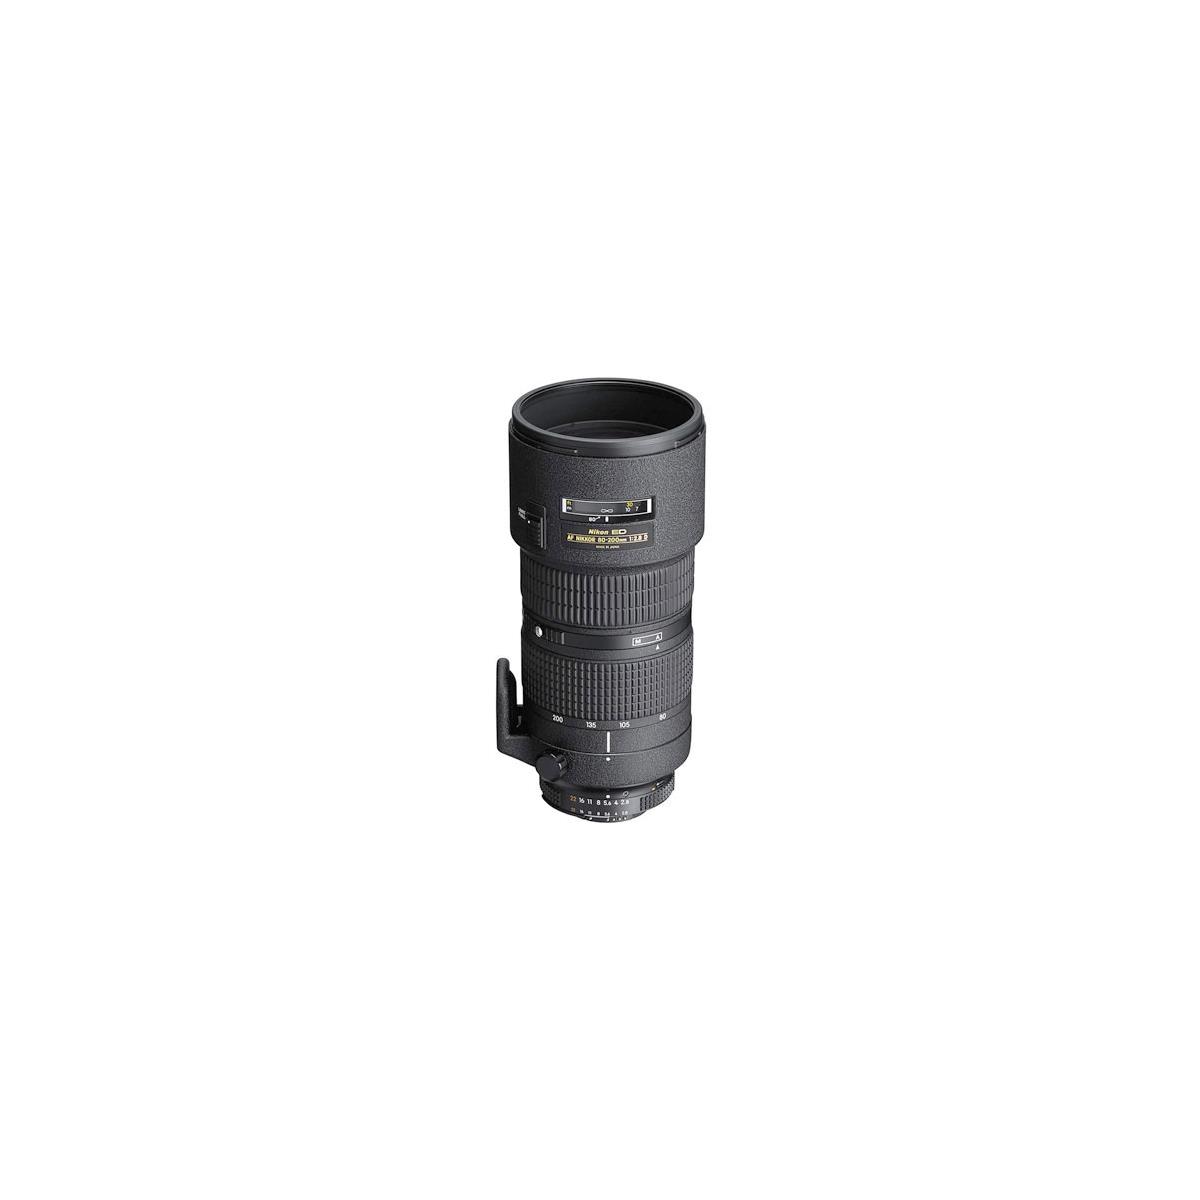 Nikon 80-200mm f/2.8D ED AF Zoom NIKKOR Lens - U.S.A. Warranty -  1986